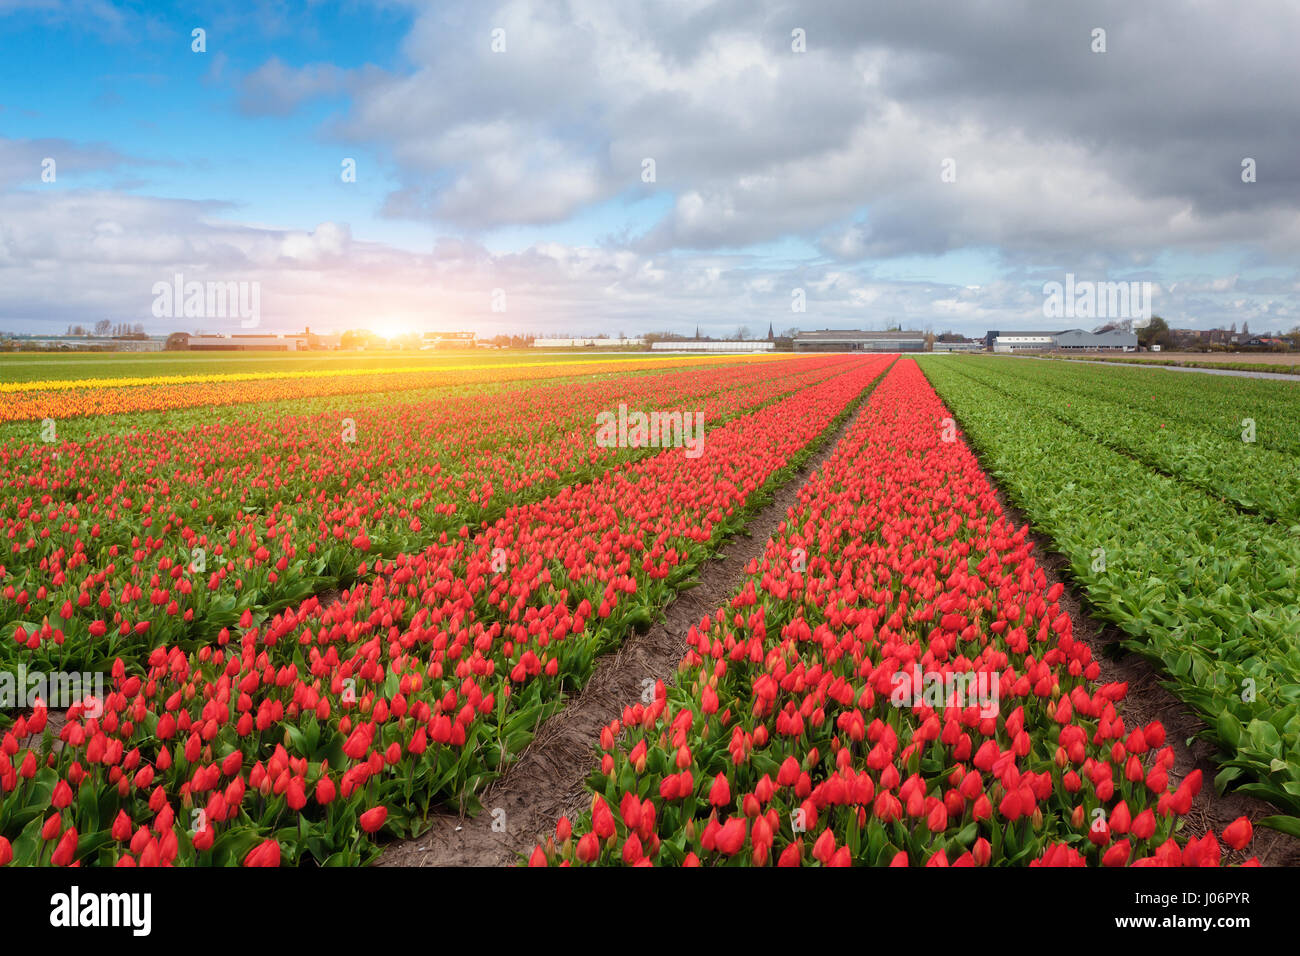 Tulpen. Blumen blühen. Reihen von blühende rote und gelbe Tulpen in einer niederländischen ländlichen Agrarlandschaft. Frühling-Szene auf dem Hof der Tulpe. Bunte Sonne Stockfoto